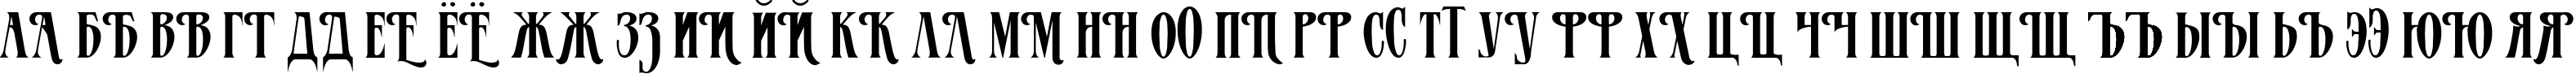 Пример написания русского алфавита шрифтом MazamaPlain Light